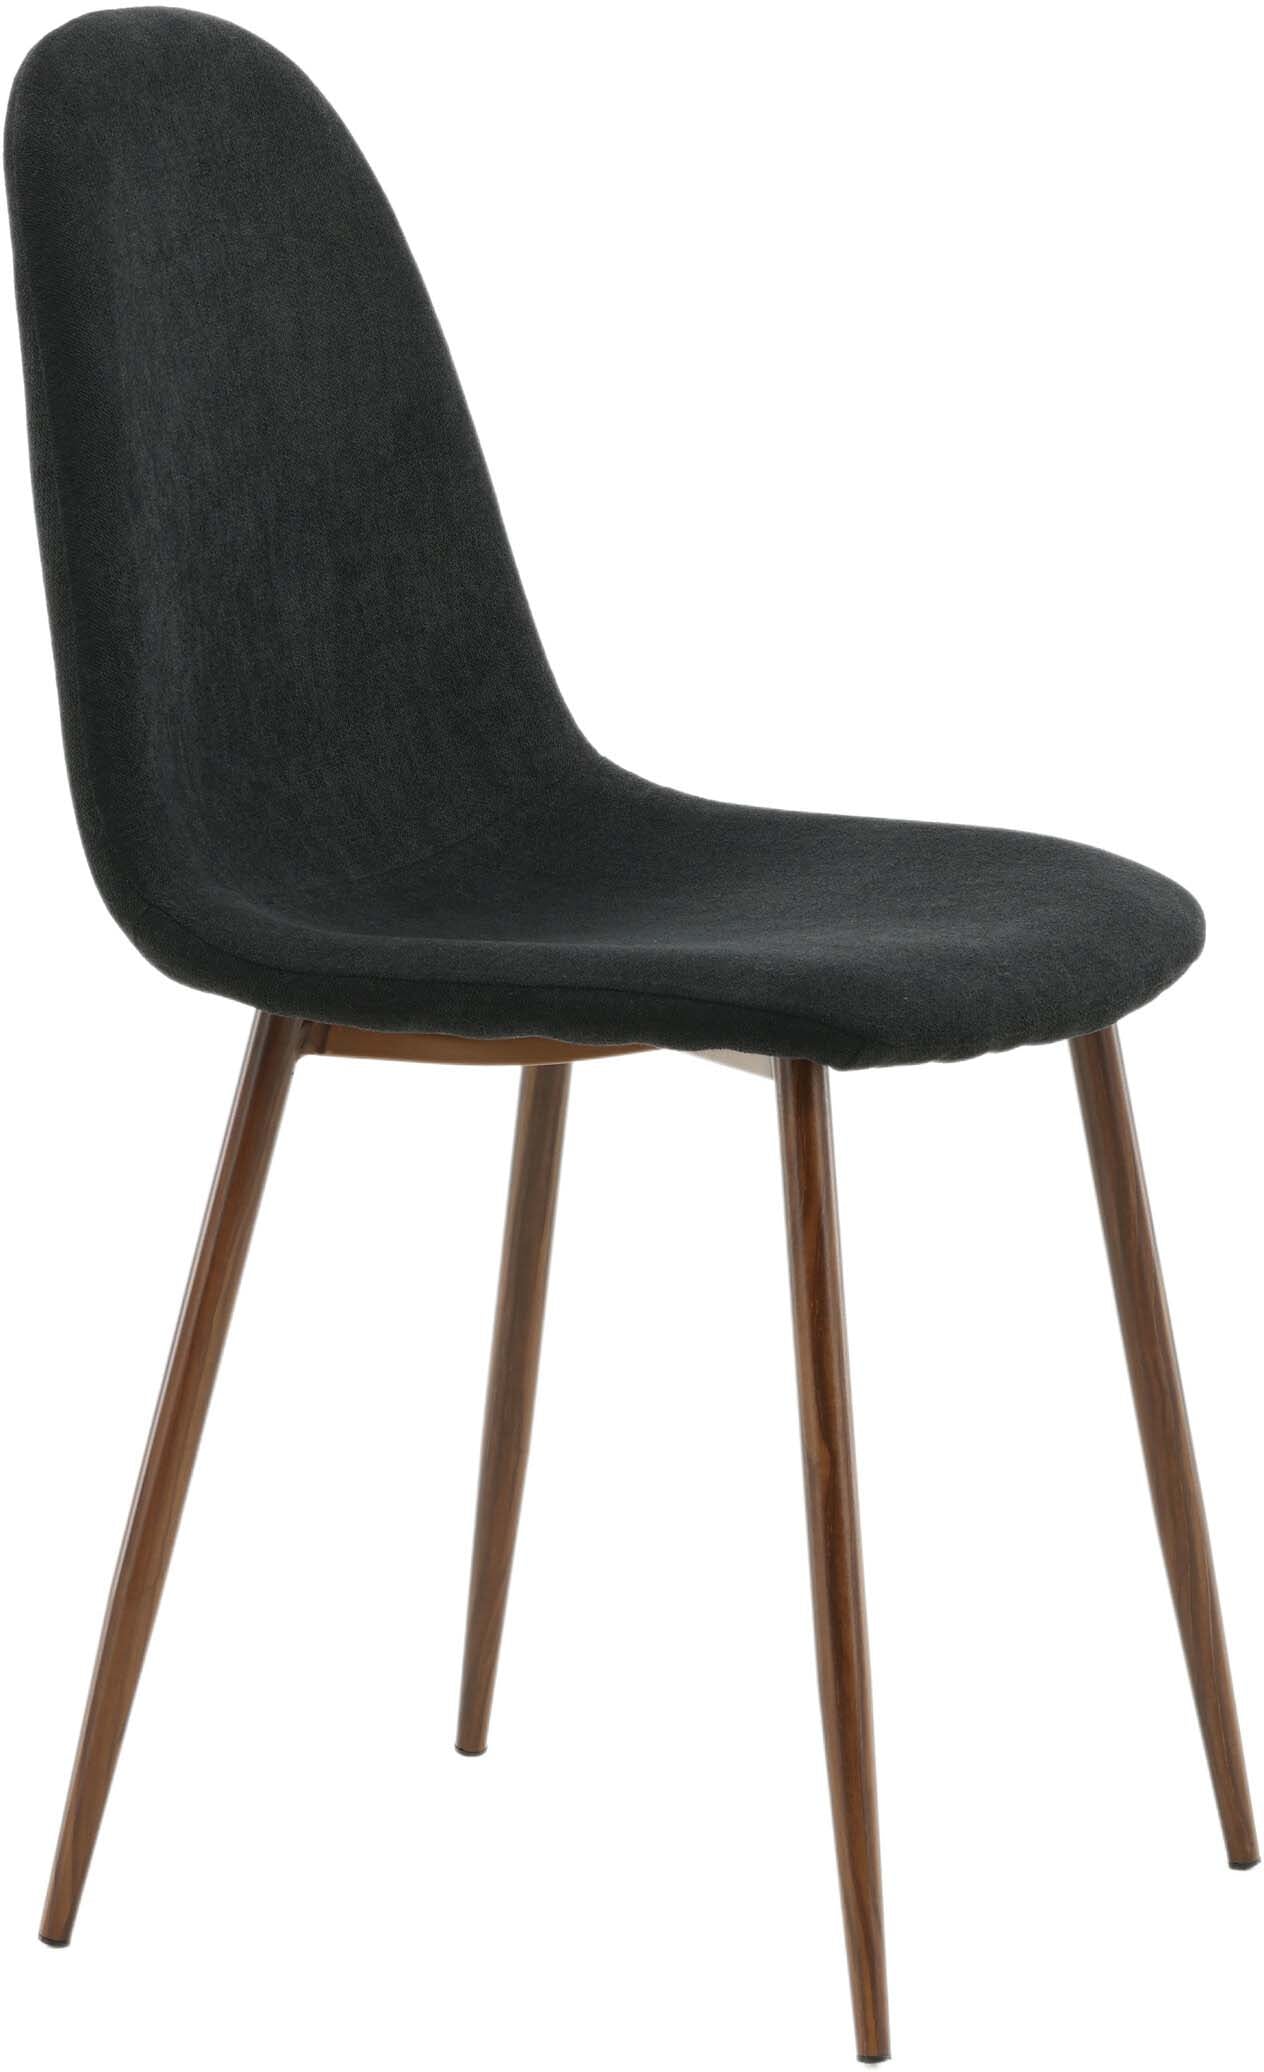 Polar Stuhl in Schwarz/Holz präsentiert im Onlineshop von KAQTU Design AG. Stuhl ist von Venture Home